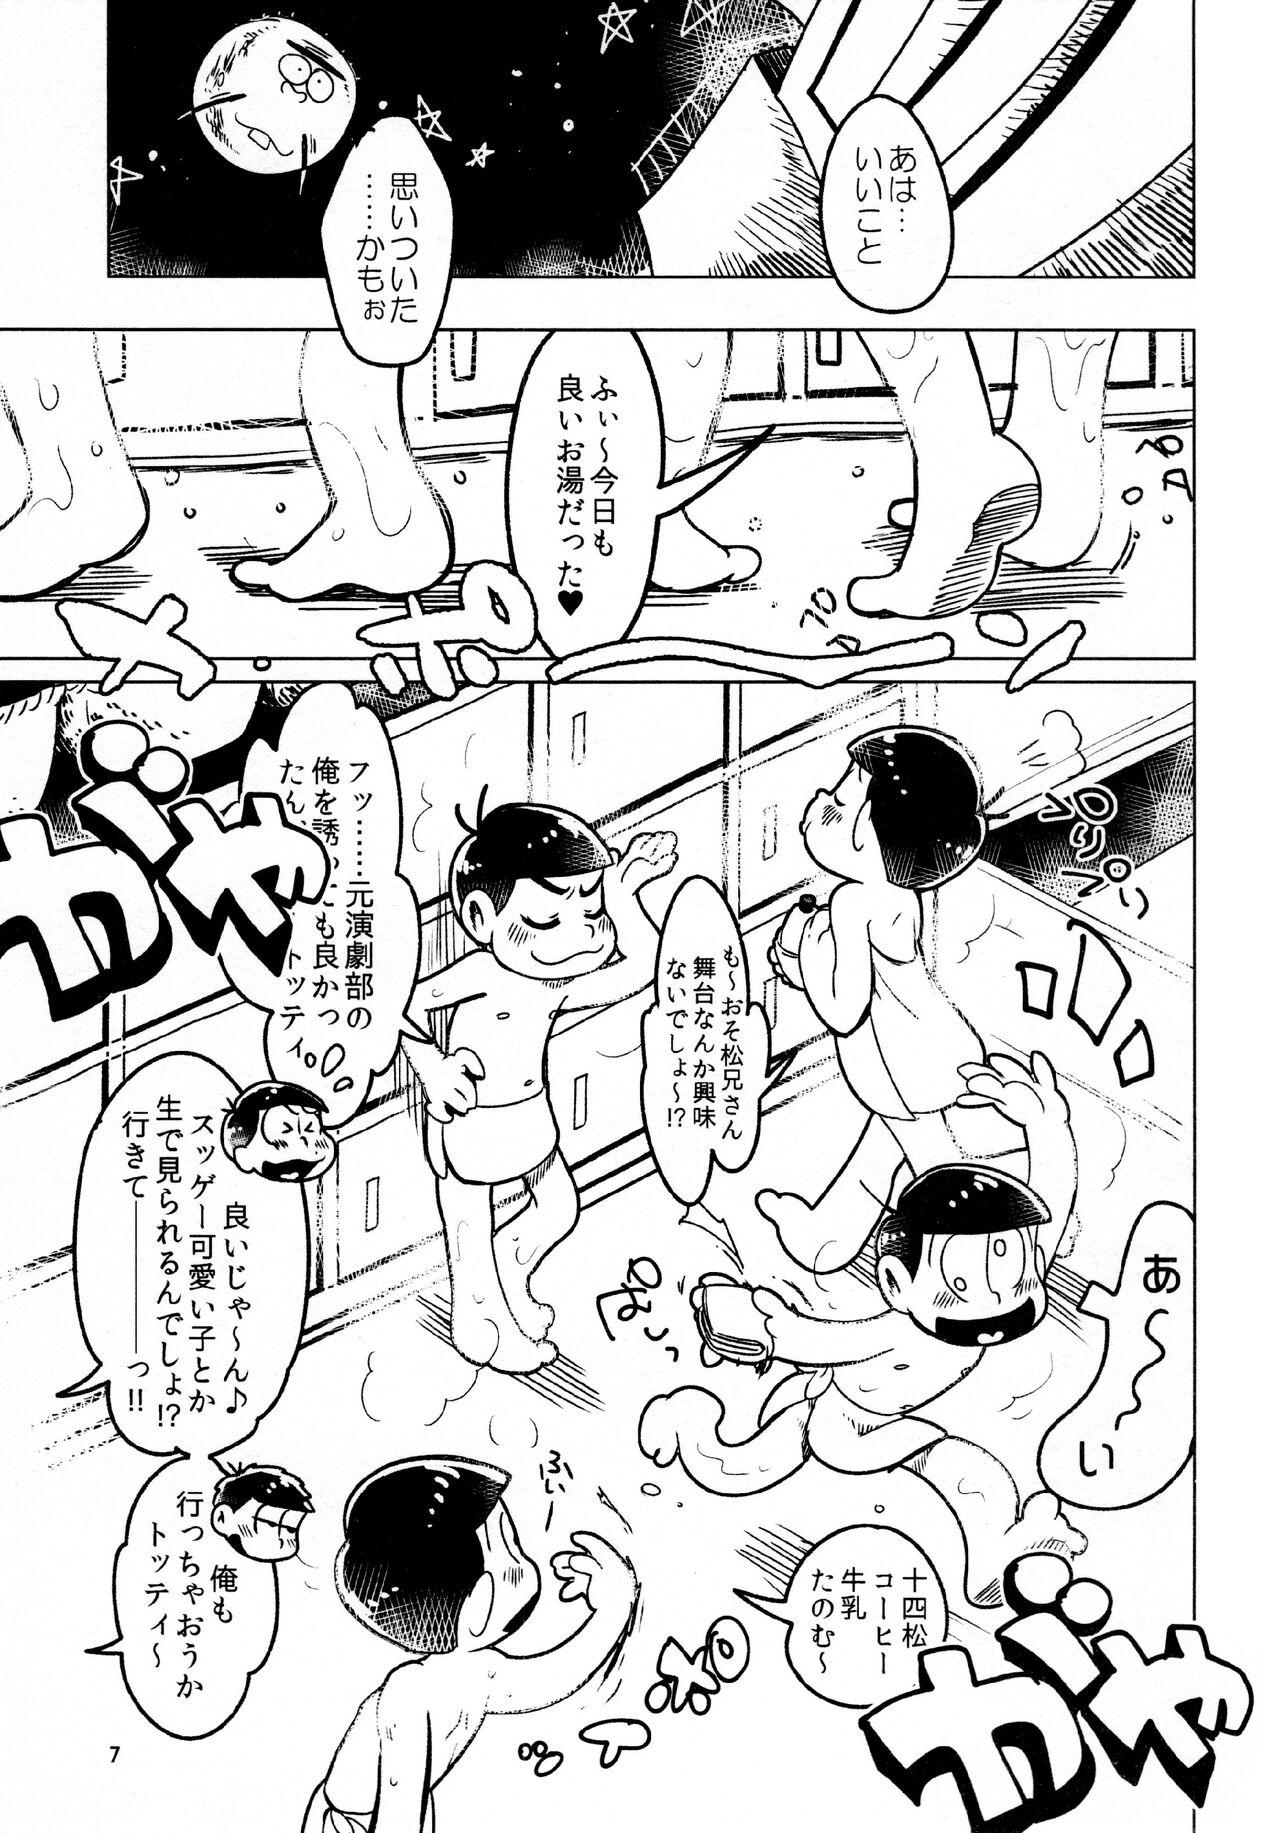 Piercing todomatsu bishi yonurekeikaku - Osomatsu-san Cojiendo - Page 7